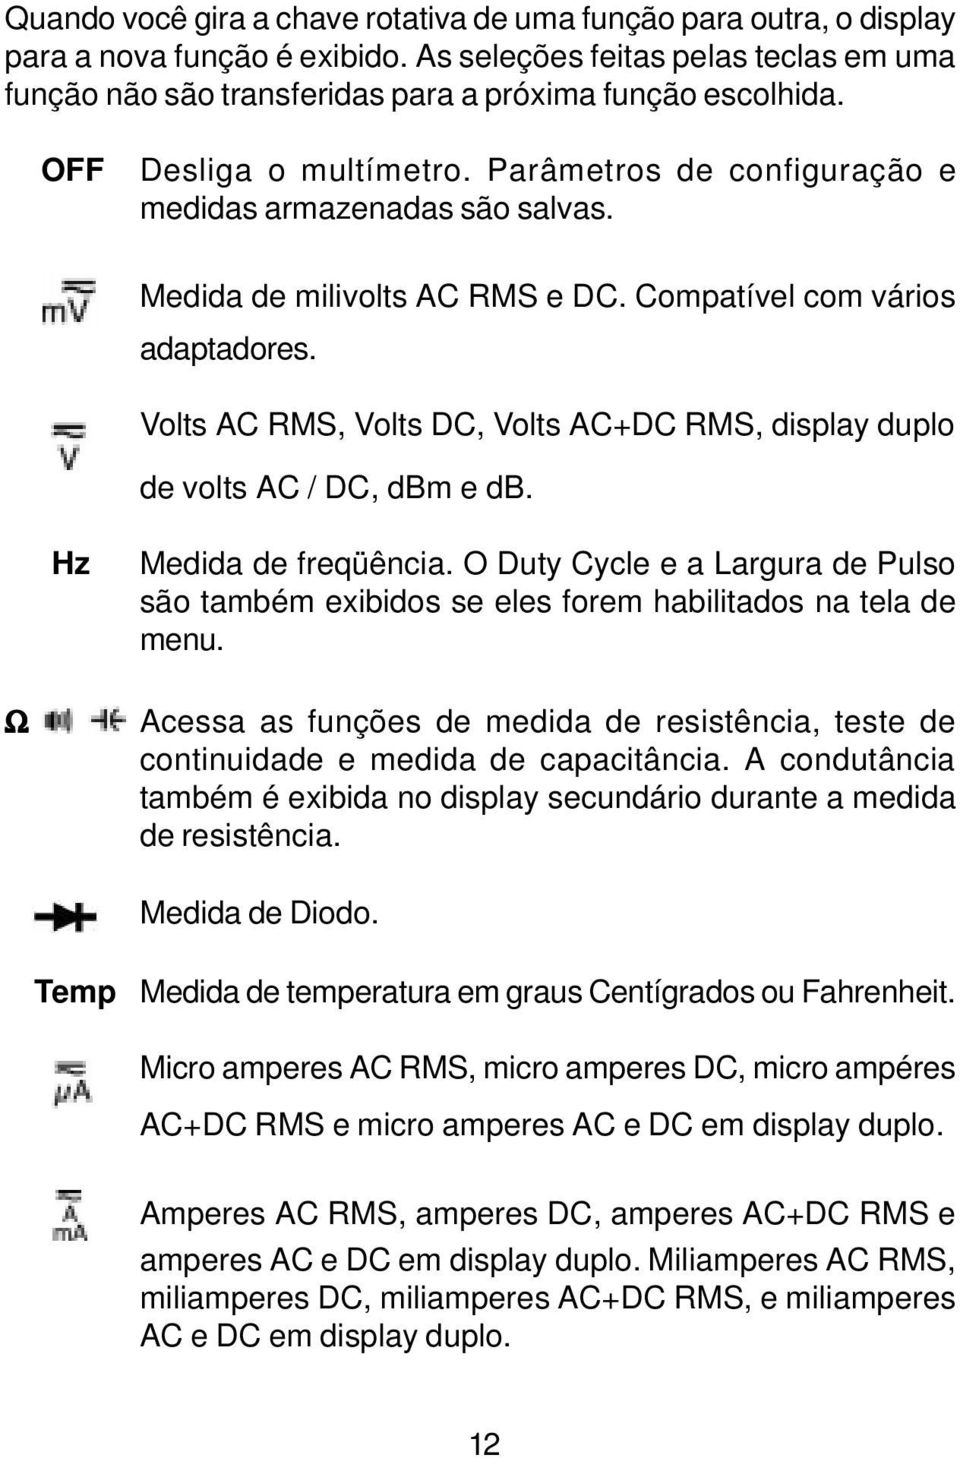 Volts RMS, Volts, Volts + RMS, display duplo de volts /, dbm e db. Hz Medida de freqüência. O Duty Cycle e a Largura de Pulso são também exibidos se eles forem habilitados na tela de menu.